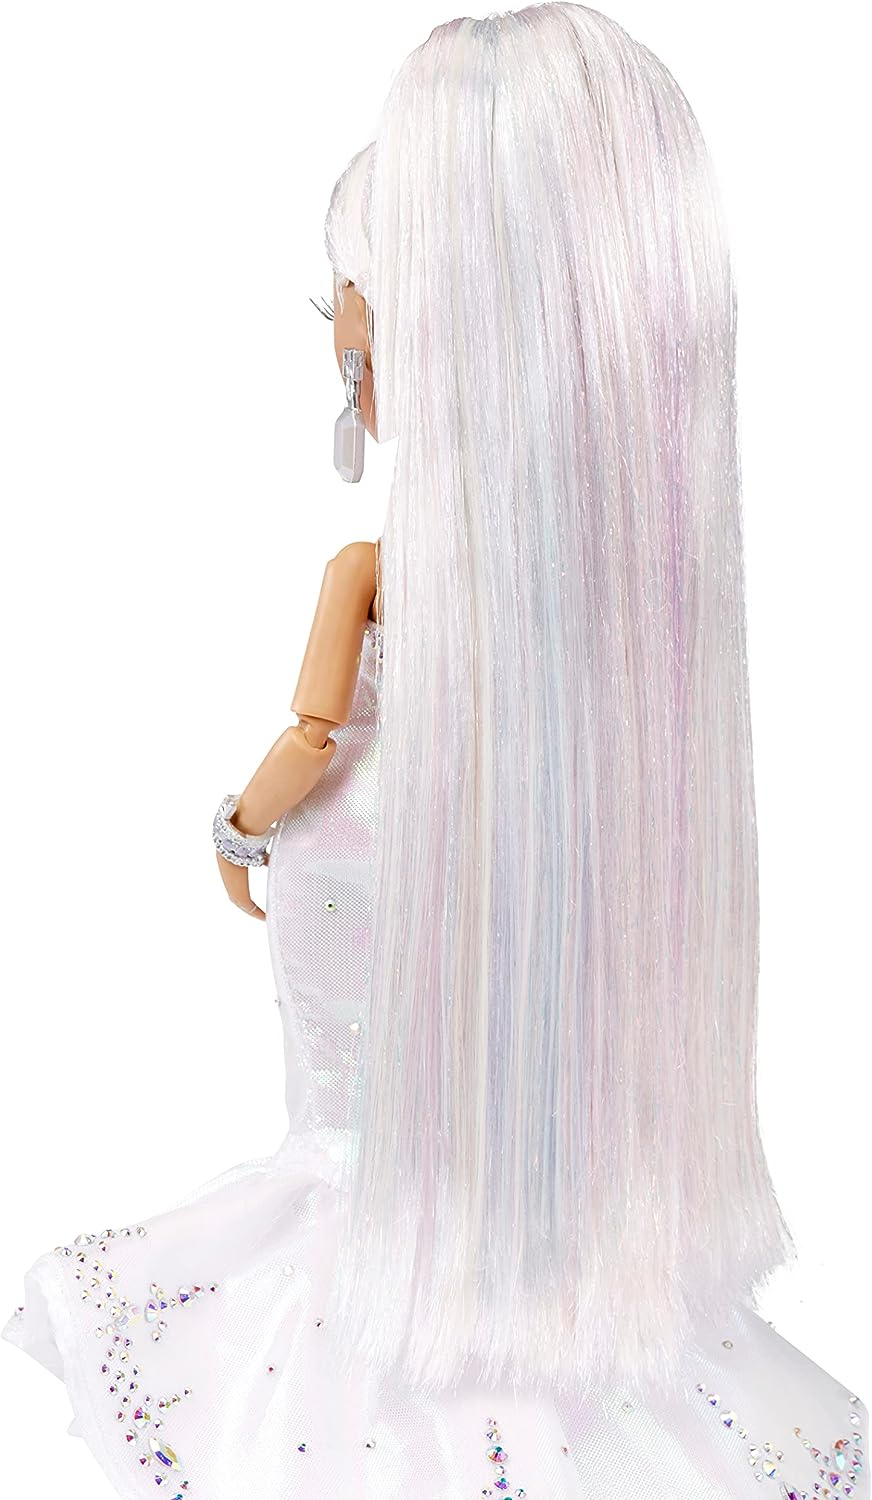 Rainbow High Holiday Editon Collectors Fashion Doll 2022 - ROXIE GRAND - Inclui cabelo multicolorido, vestido iridescente e diamante e acessórios de boneca premium - Ótimo presente para crianças a partir de 6 anos